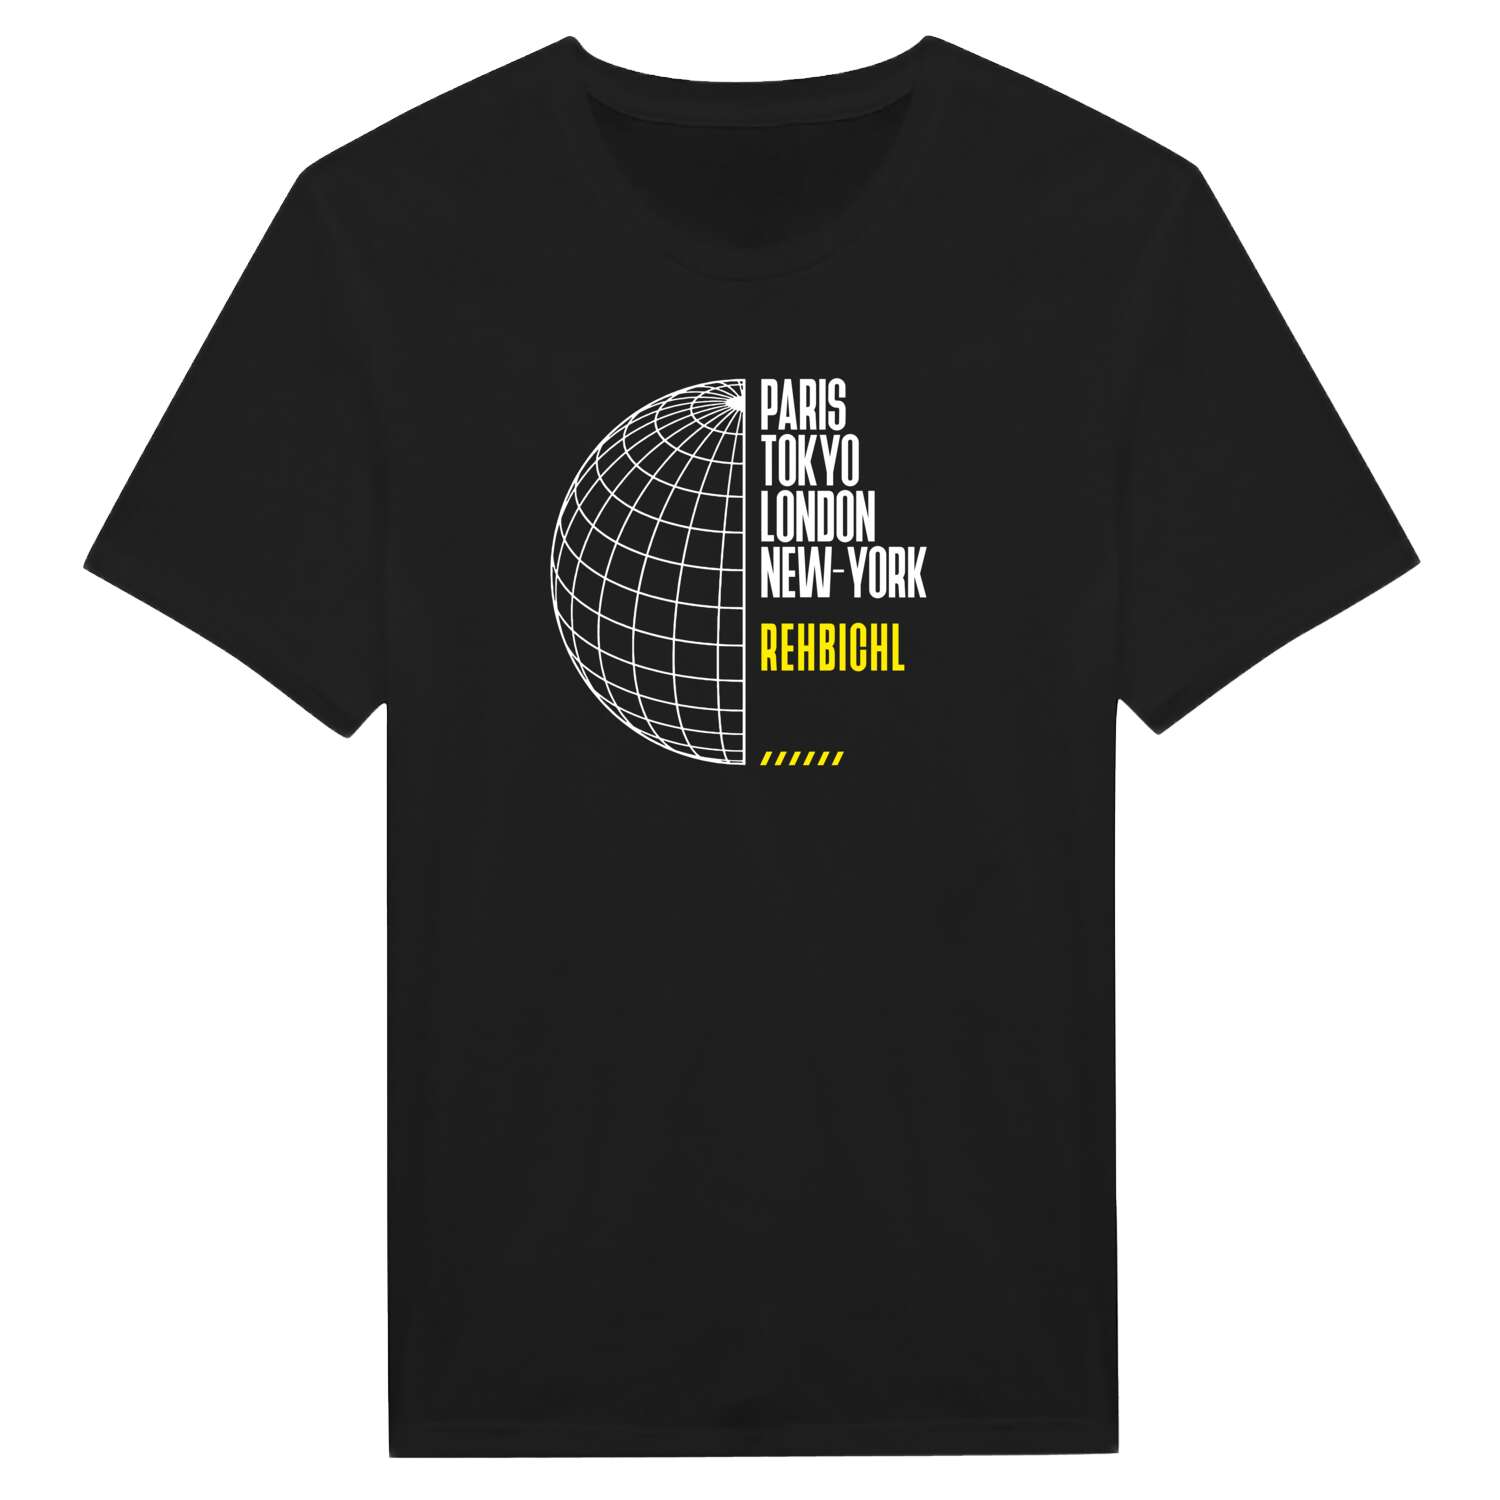 Rehbichl T-Shirt »Paris Tokyo London«